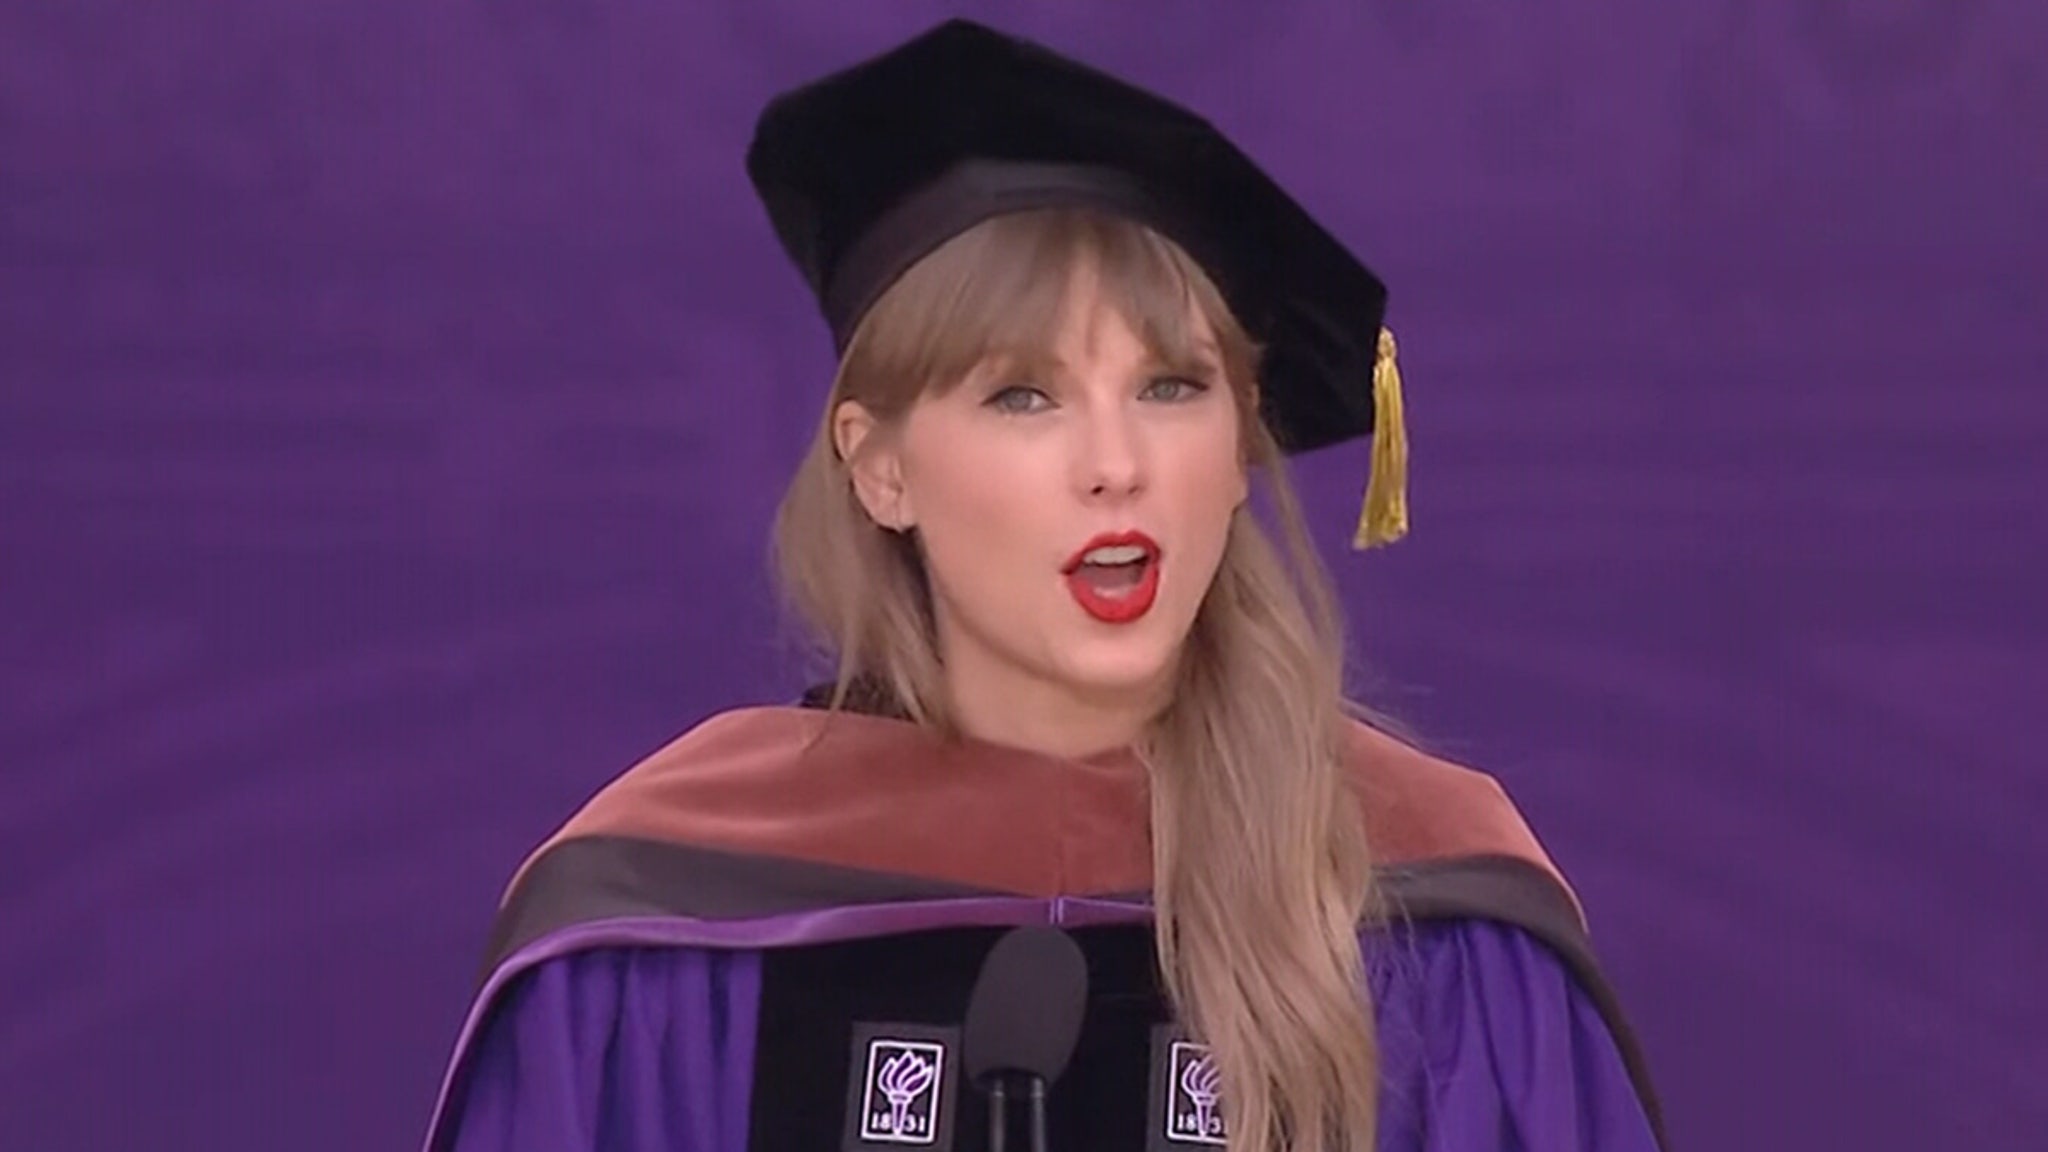 Przemówienie otwierające Taylor Swift na New York University subtelnie odnosi się do zniesienia kultury